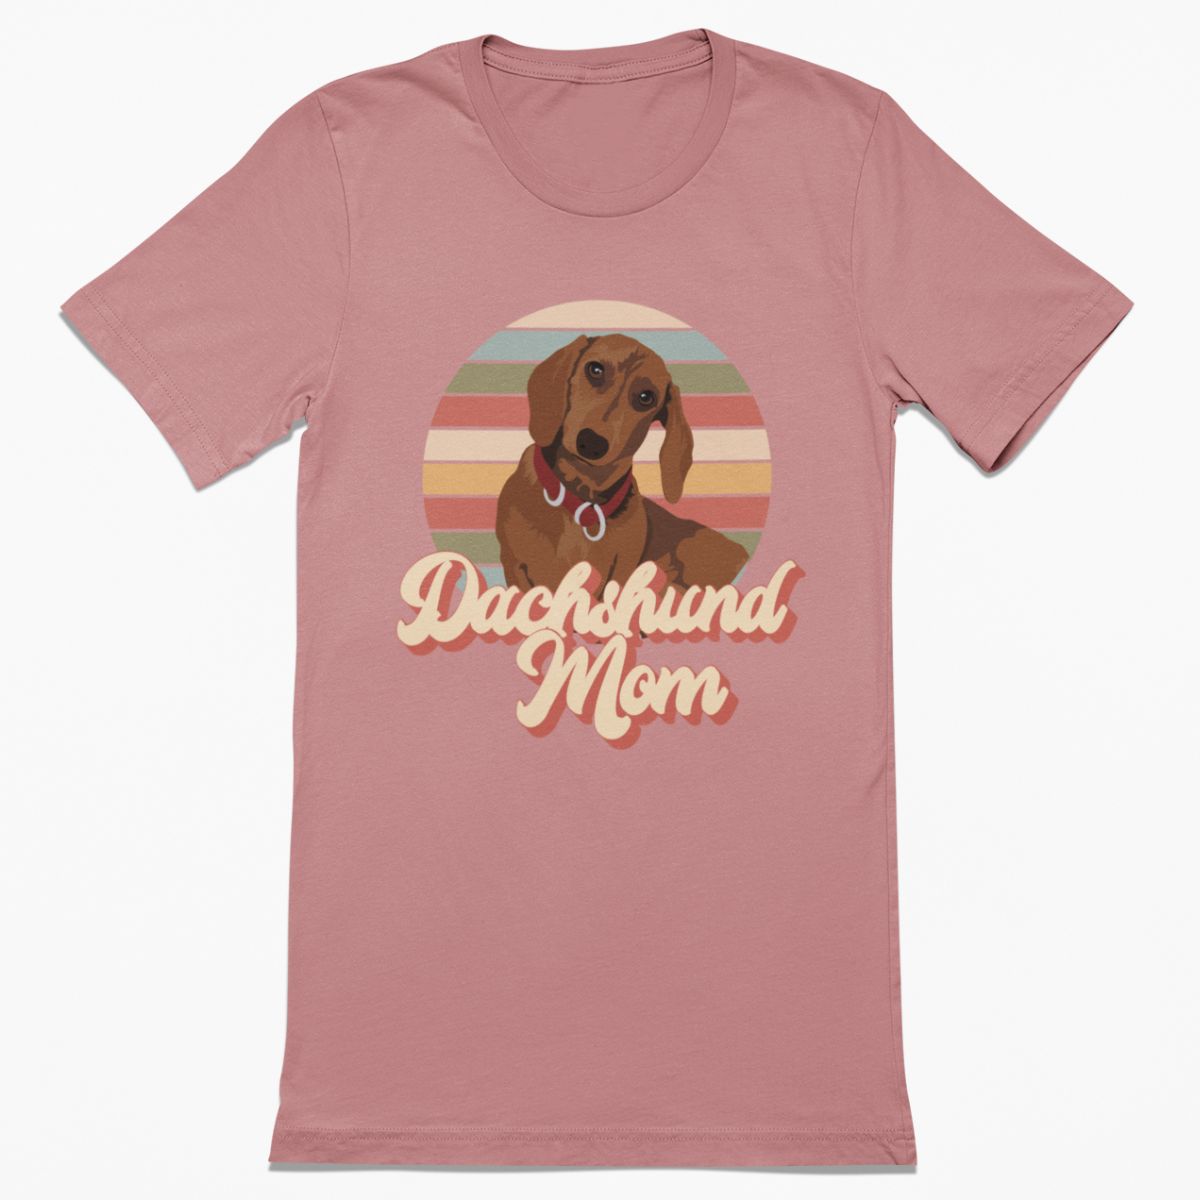 Retro Dachshund Mom Shirt